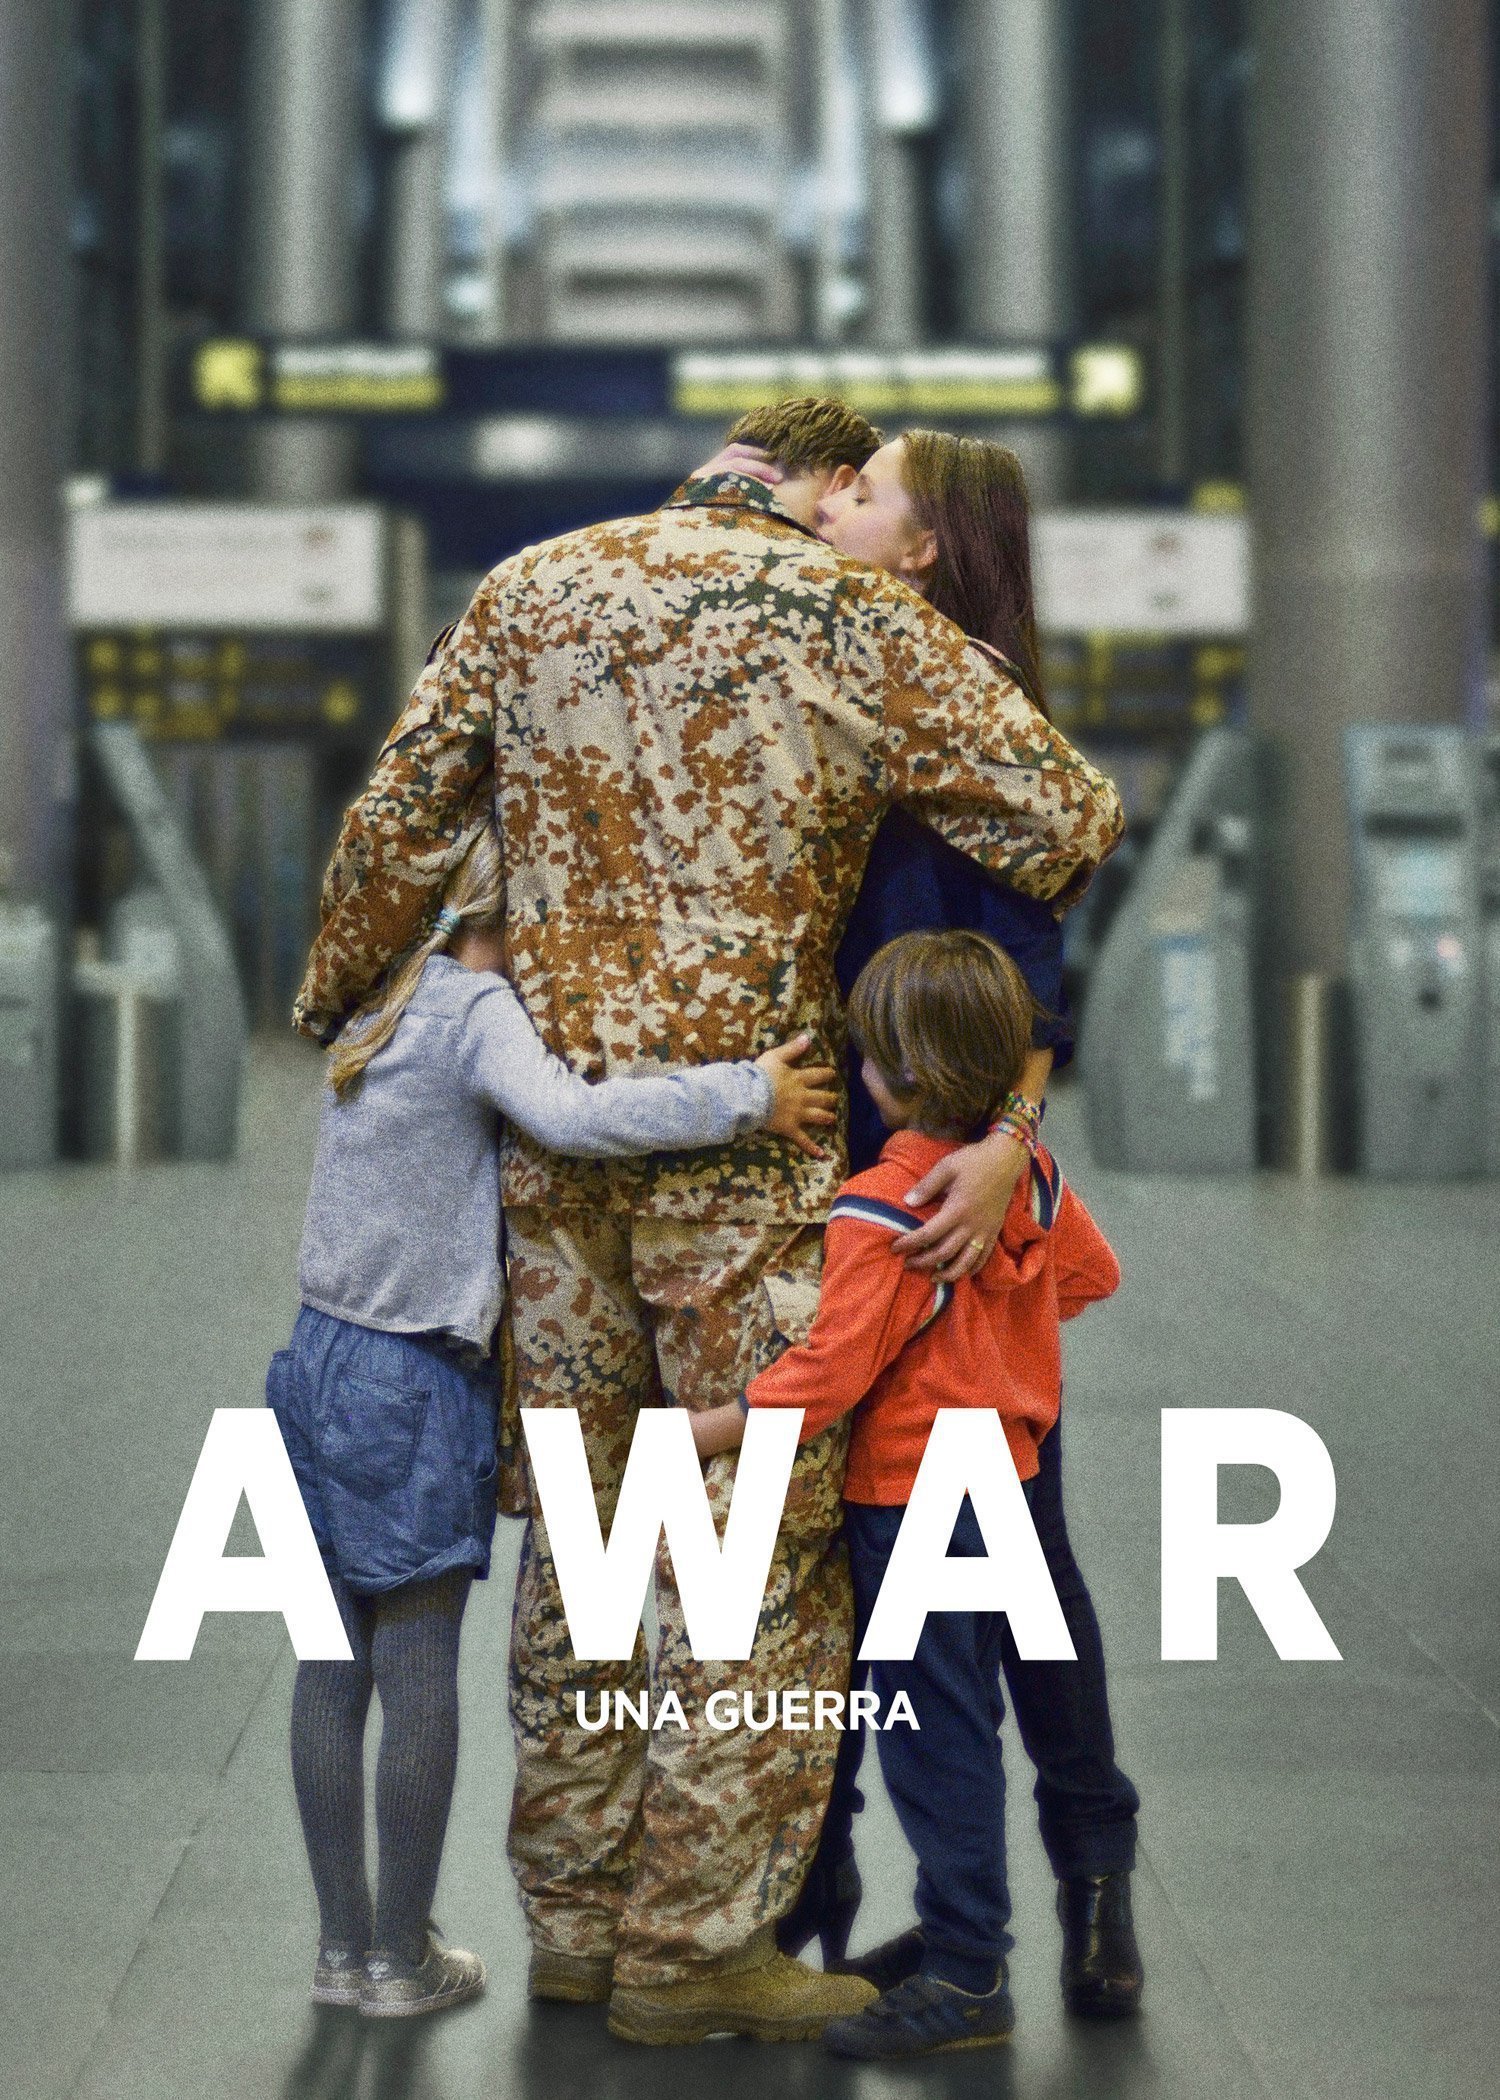 A war (Una guerra)